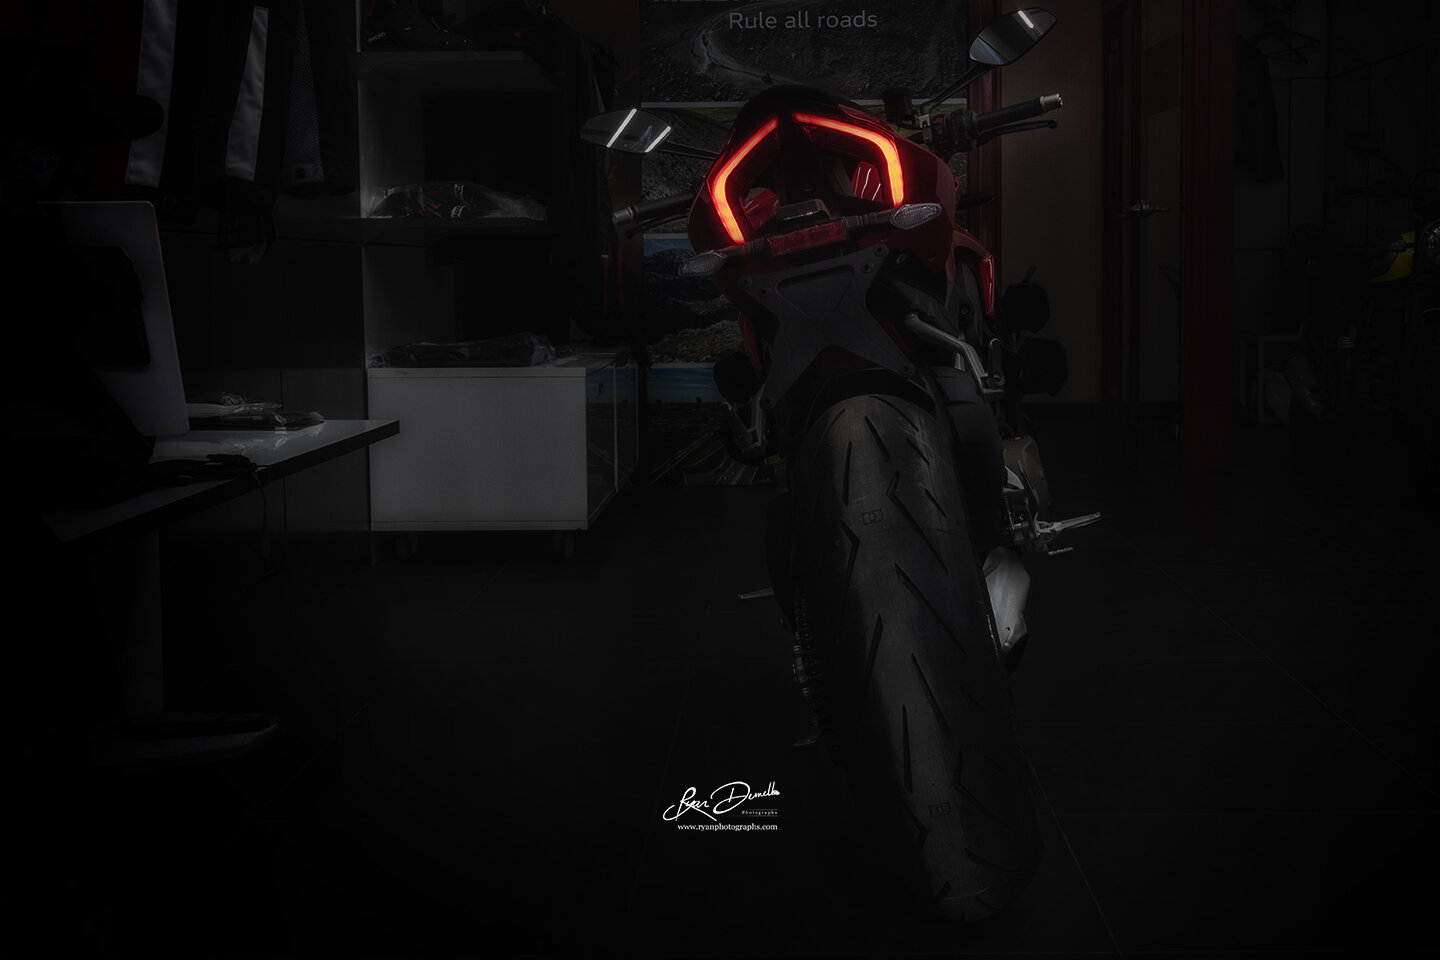 Ducati Streetfighter V4 2021